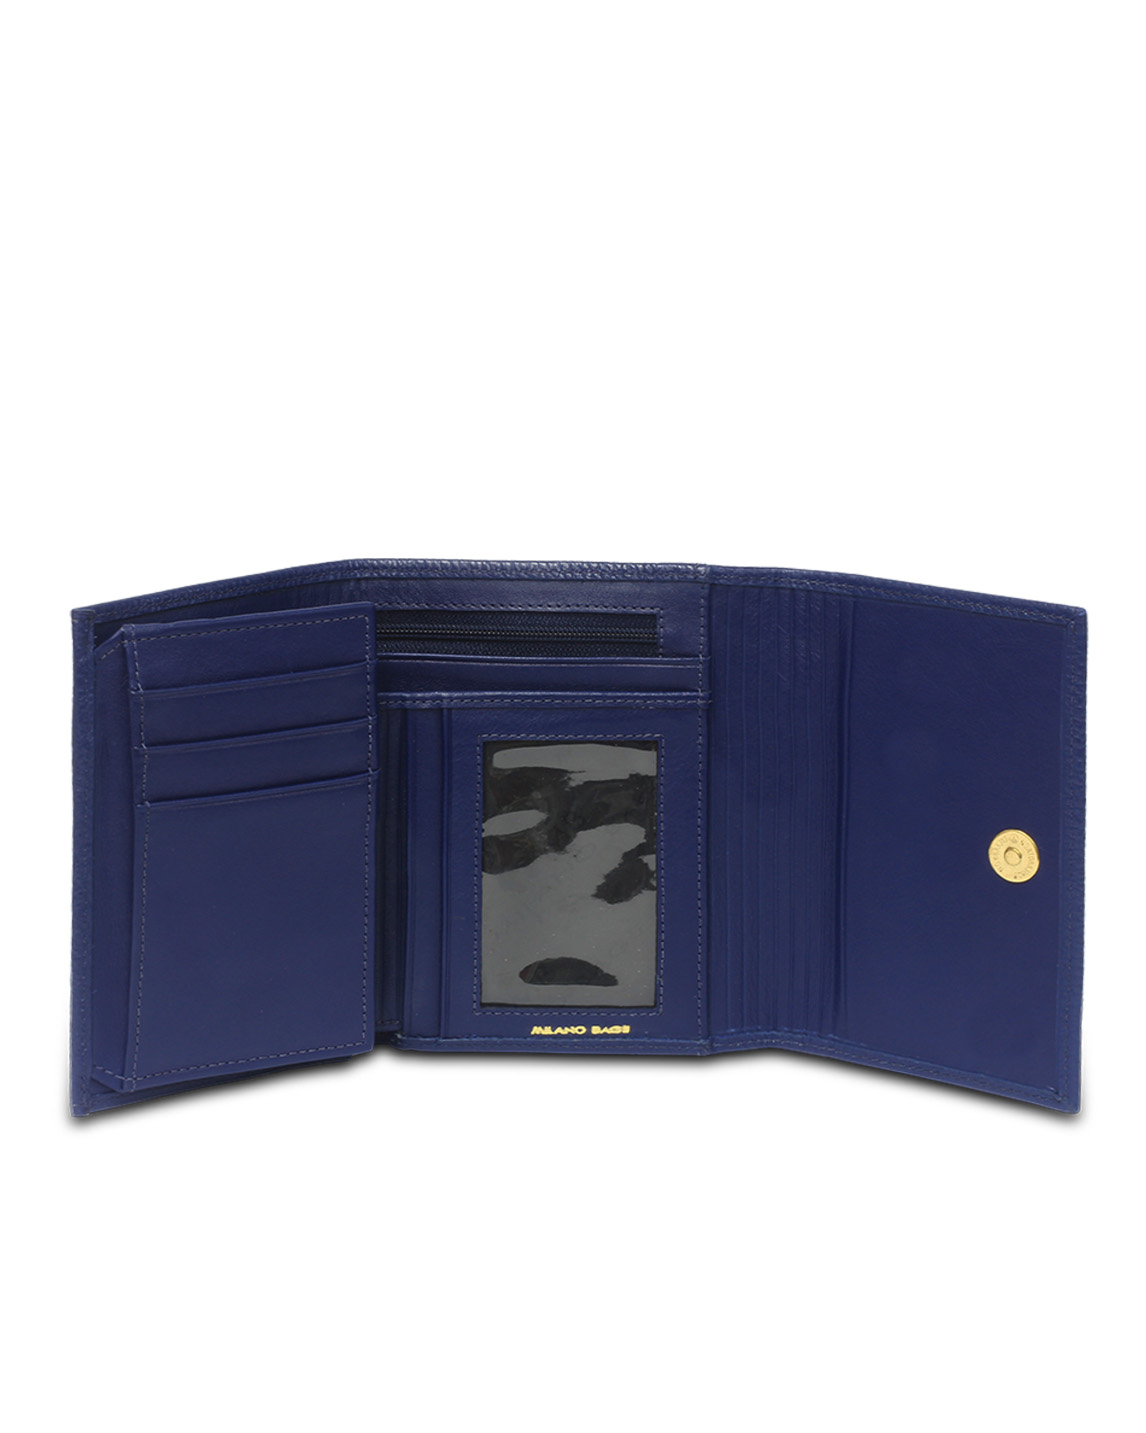 Billetera de Mujer BM-501 Color Azul